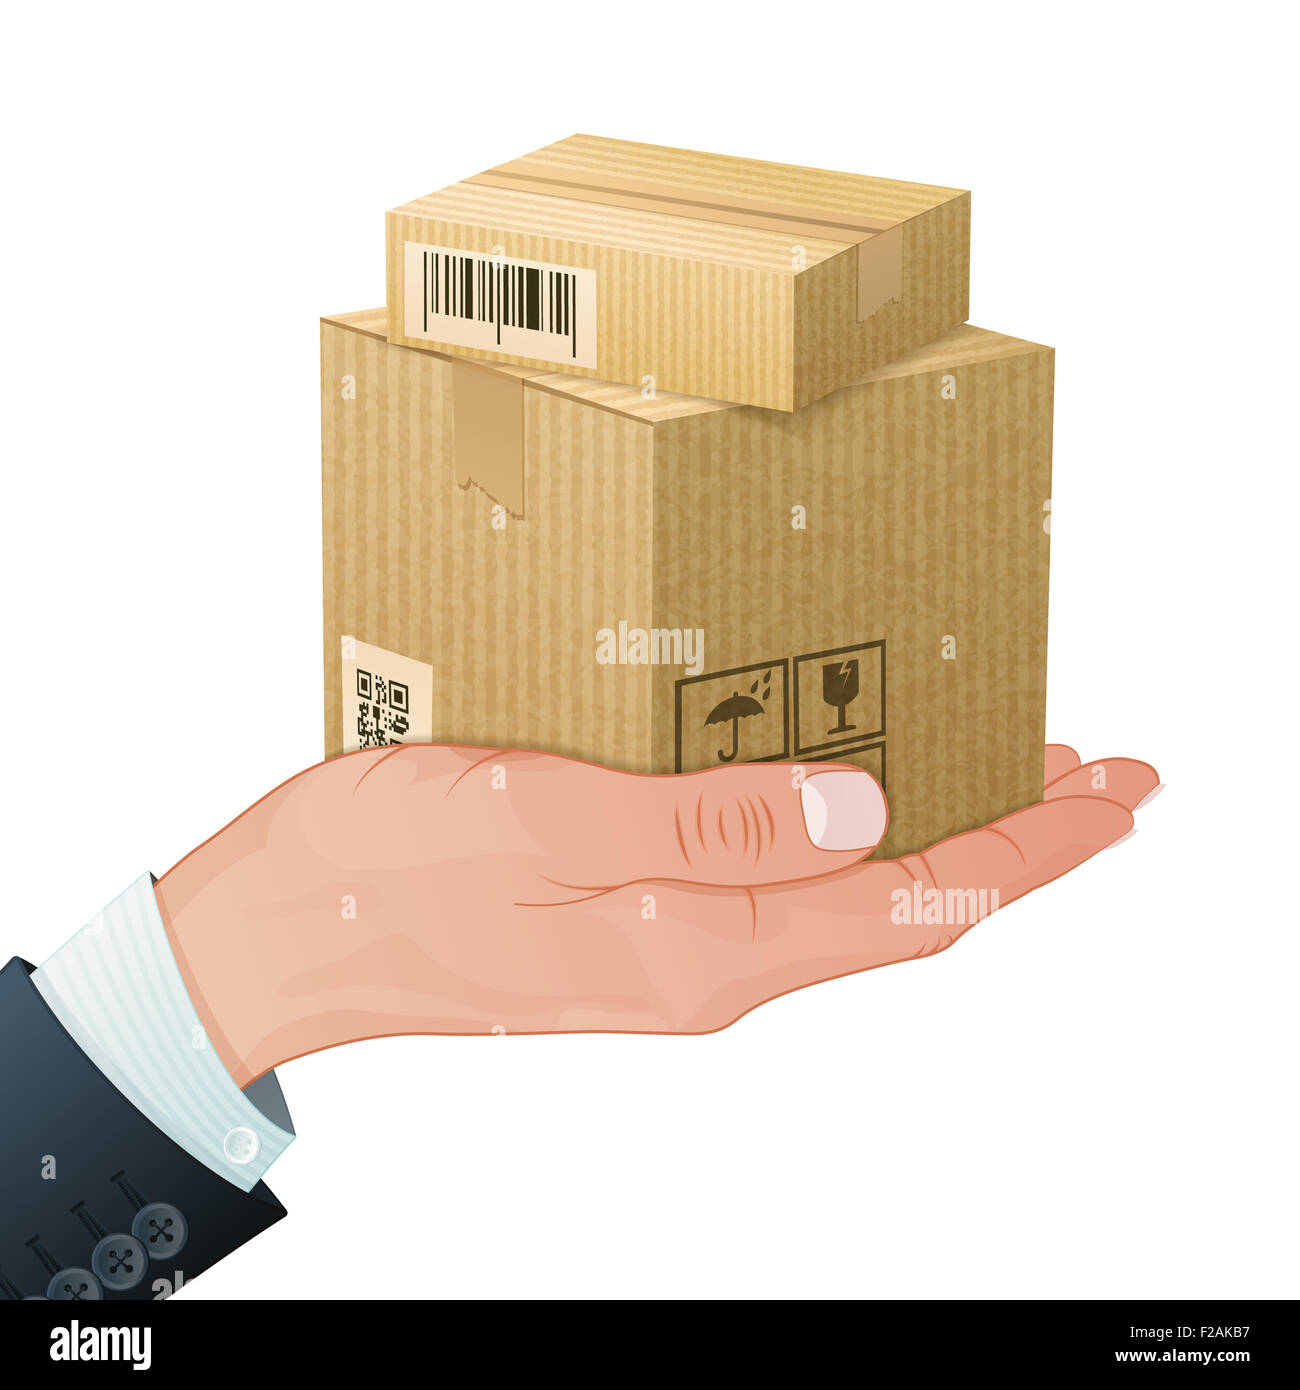 Le concept de service de livraison - la main avec des boîtes en carton dans un style 3D réaliste. Modèle peut être utilisé pour la couverture, une brochure, une affiche et Banque D'Images